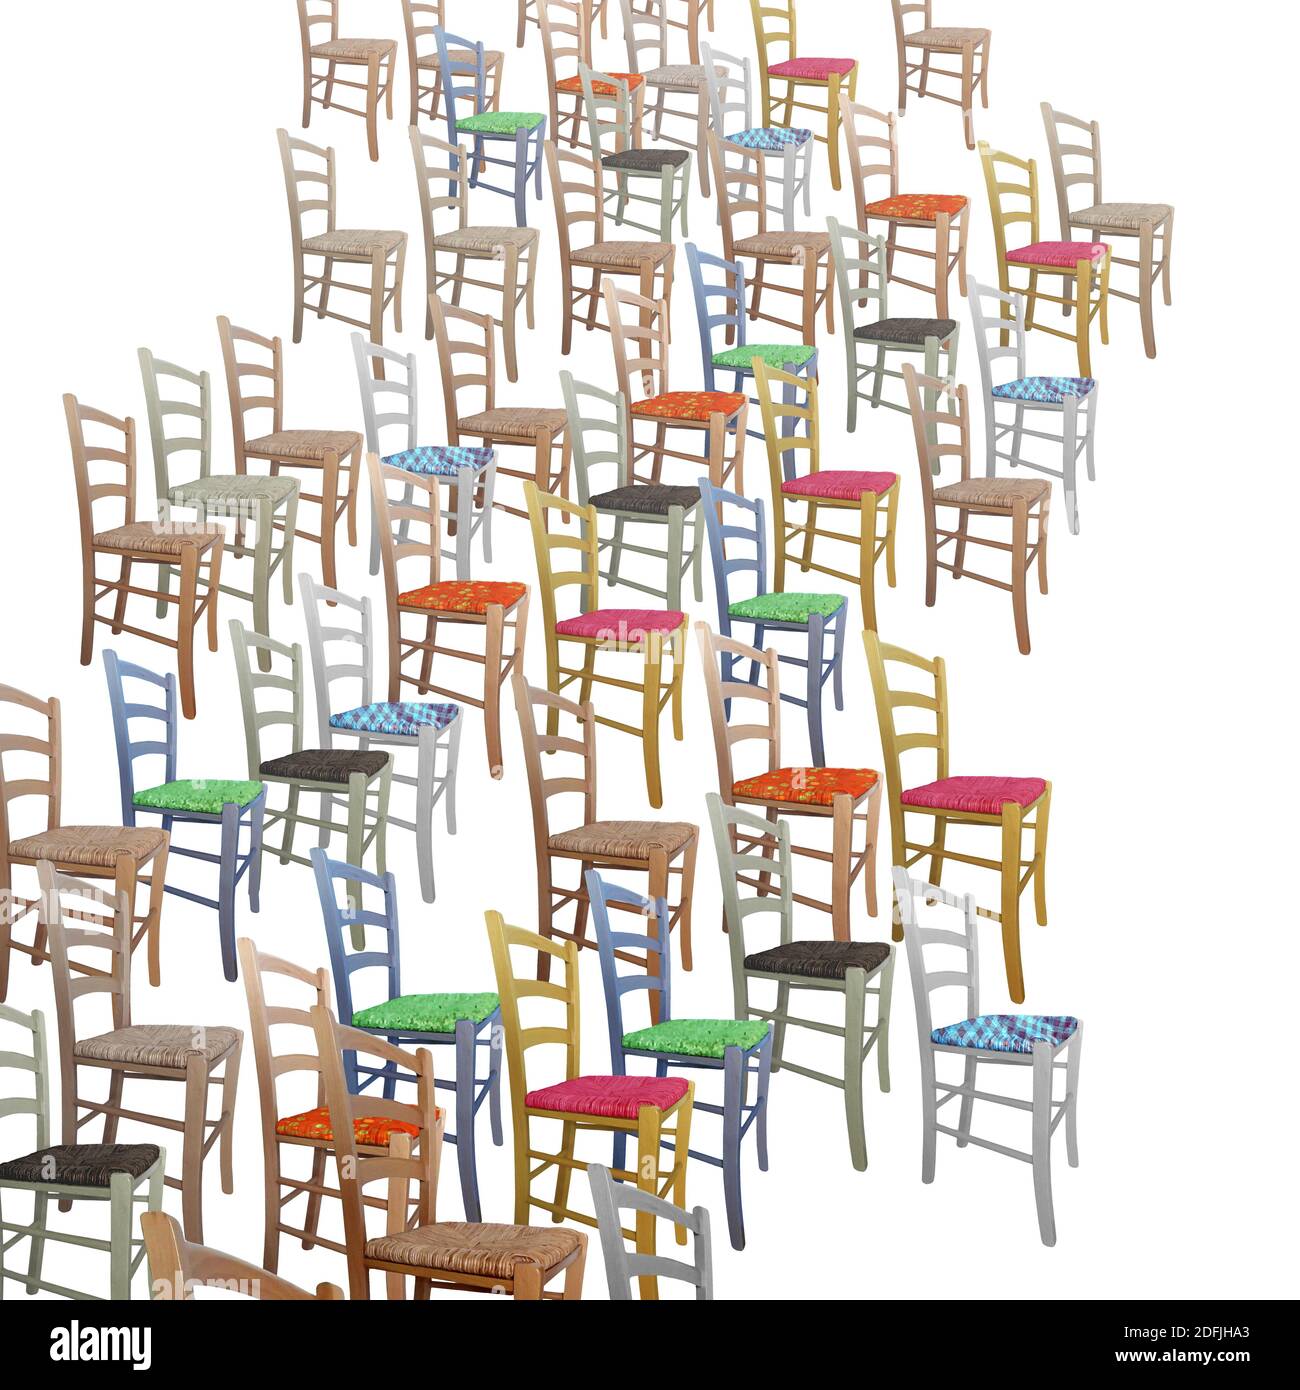 Farbige Holzstühle auf weißem Hintergrund - Fotos Collage Stockfoto